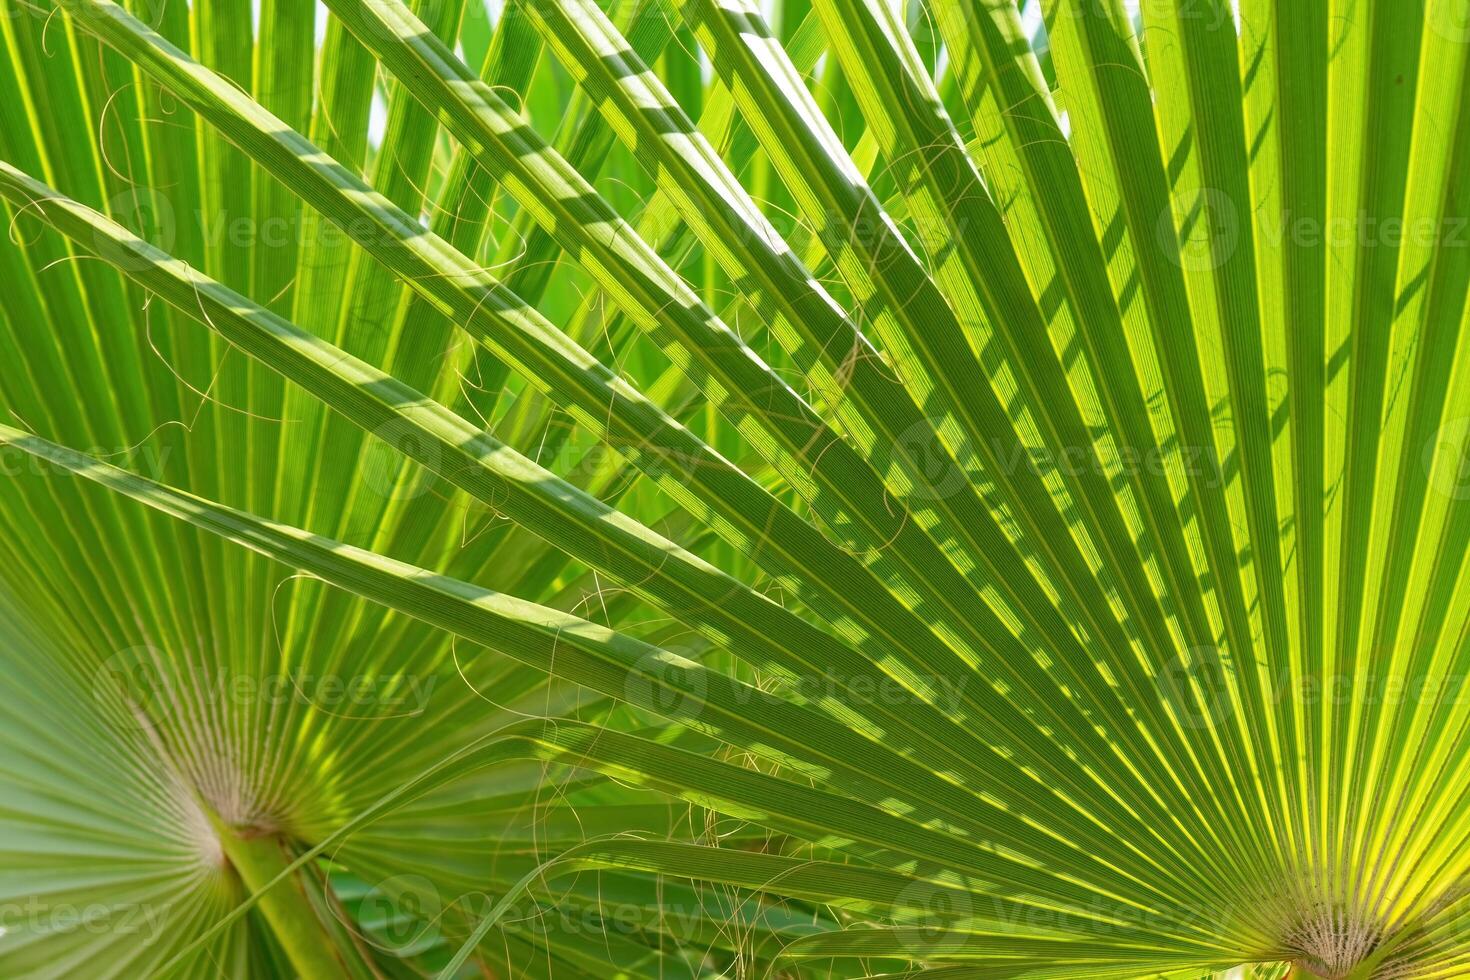 verde Palma folhas fundo com luz solar foto